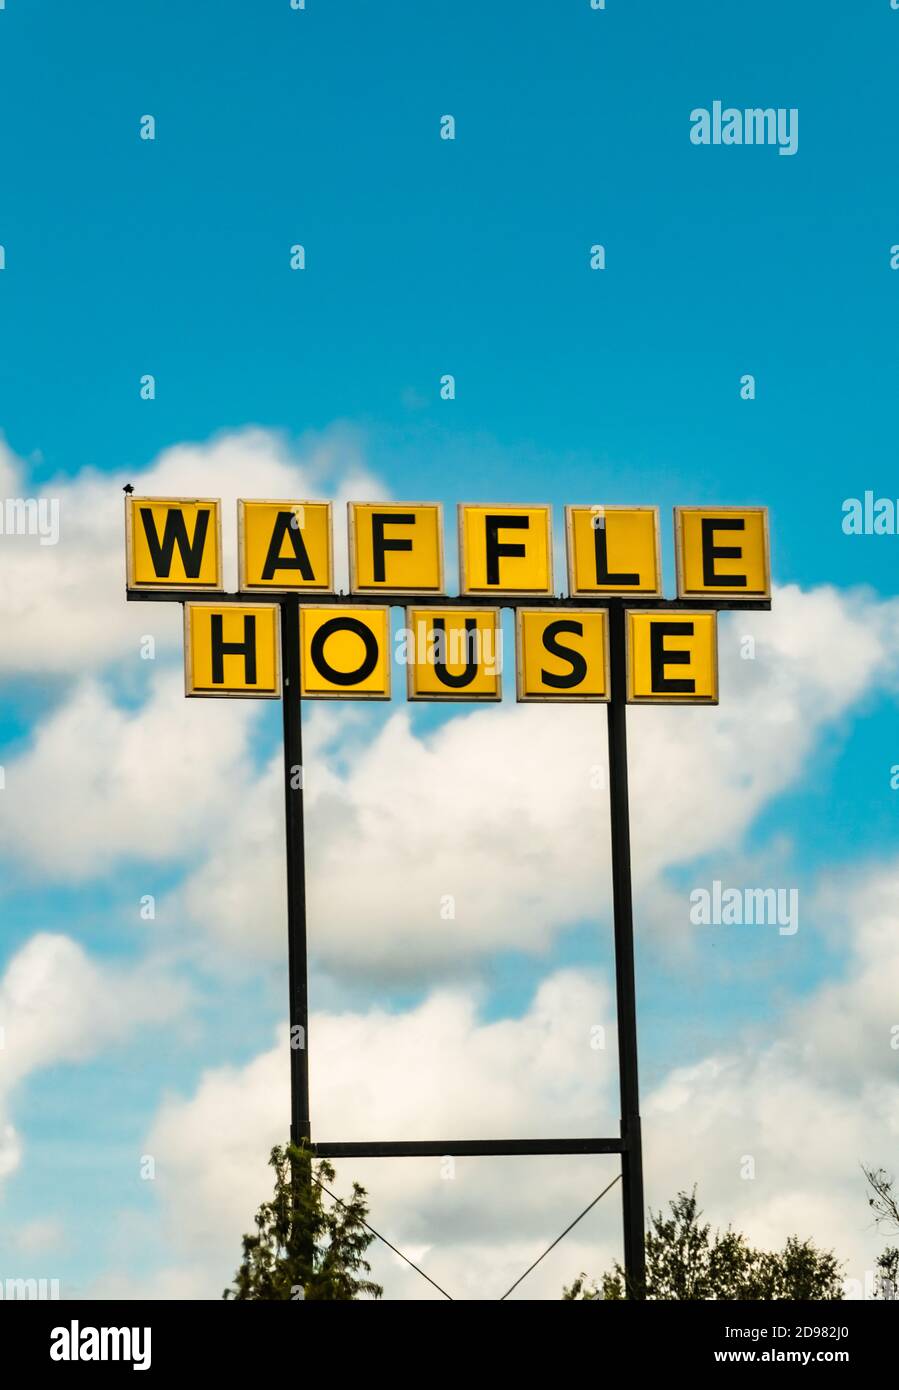 Waffle casa segnale stradale set contro un cielo blu con nuvole nel cielo. Foto Stock